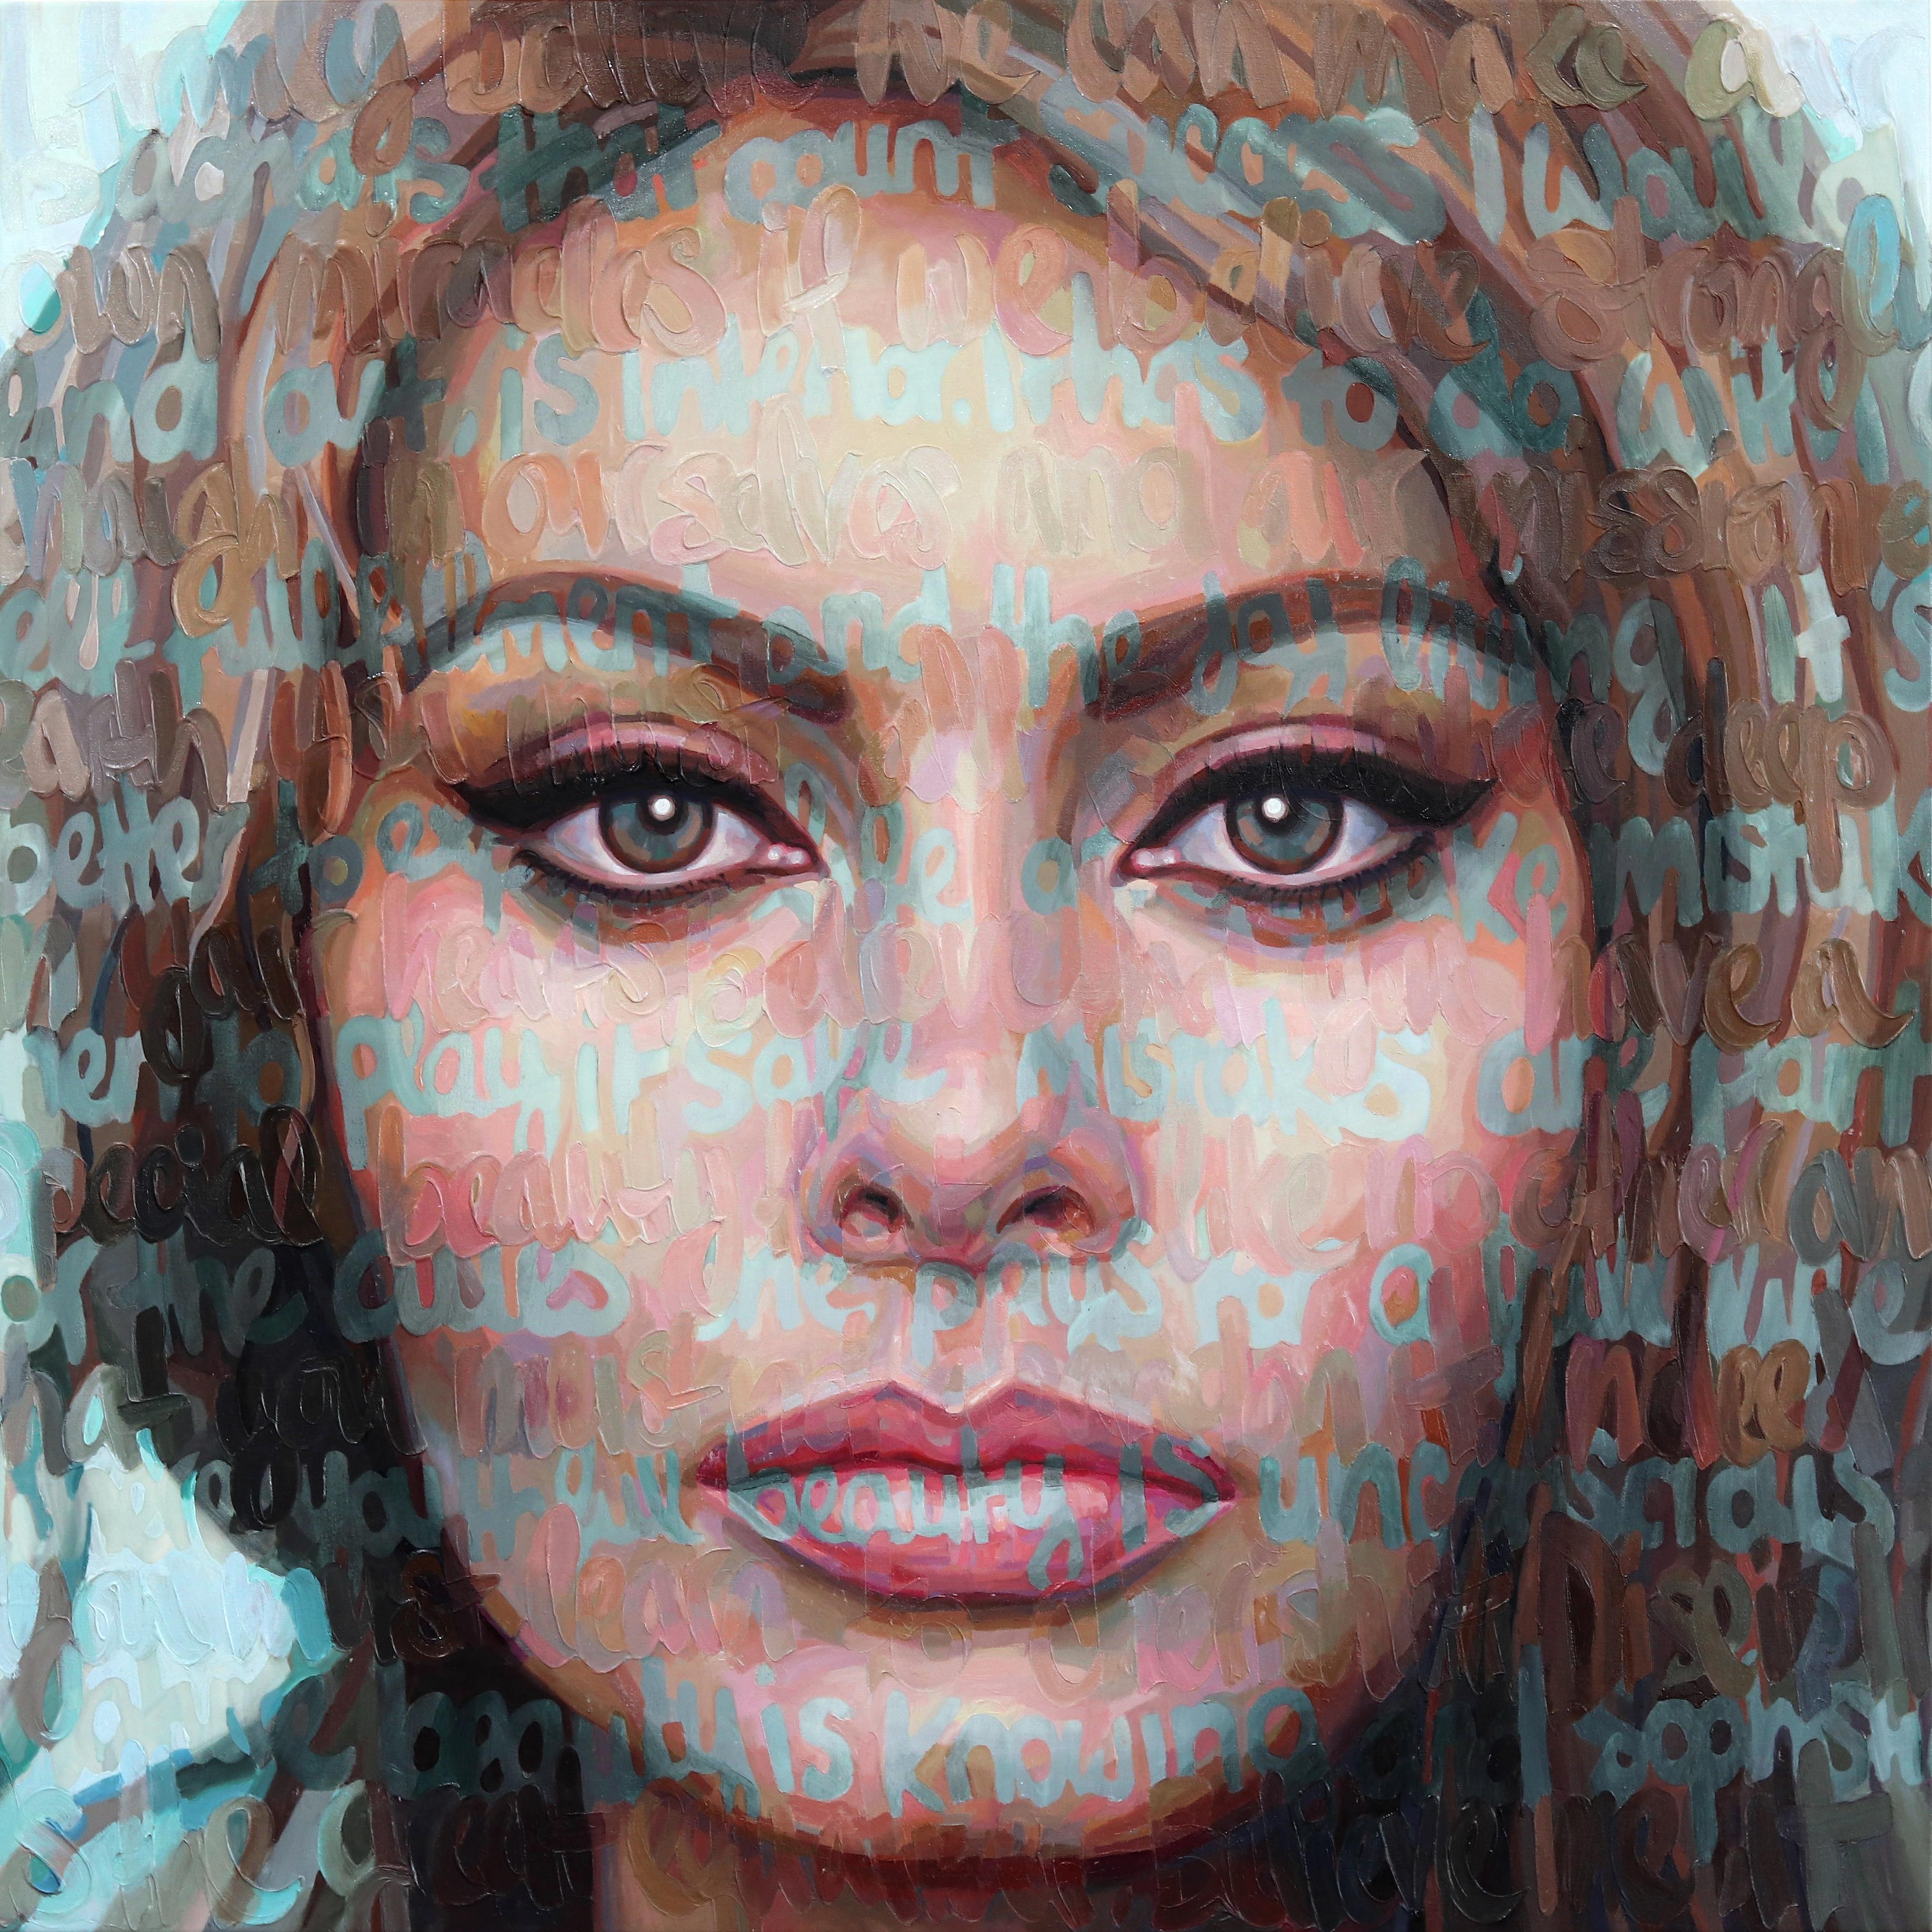 Figurative Painting Christina Major - Sophia Loren - L'huile texturée et l'image immergée dans le texte